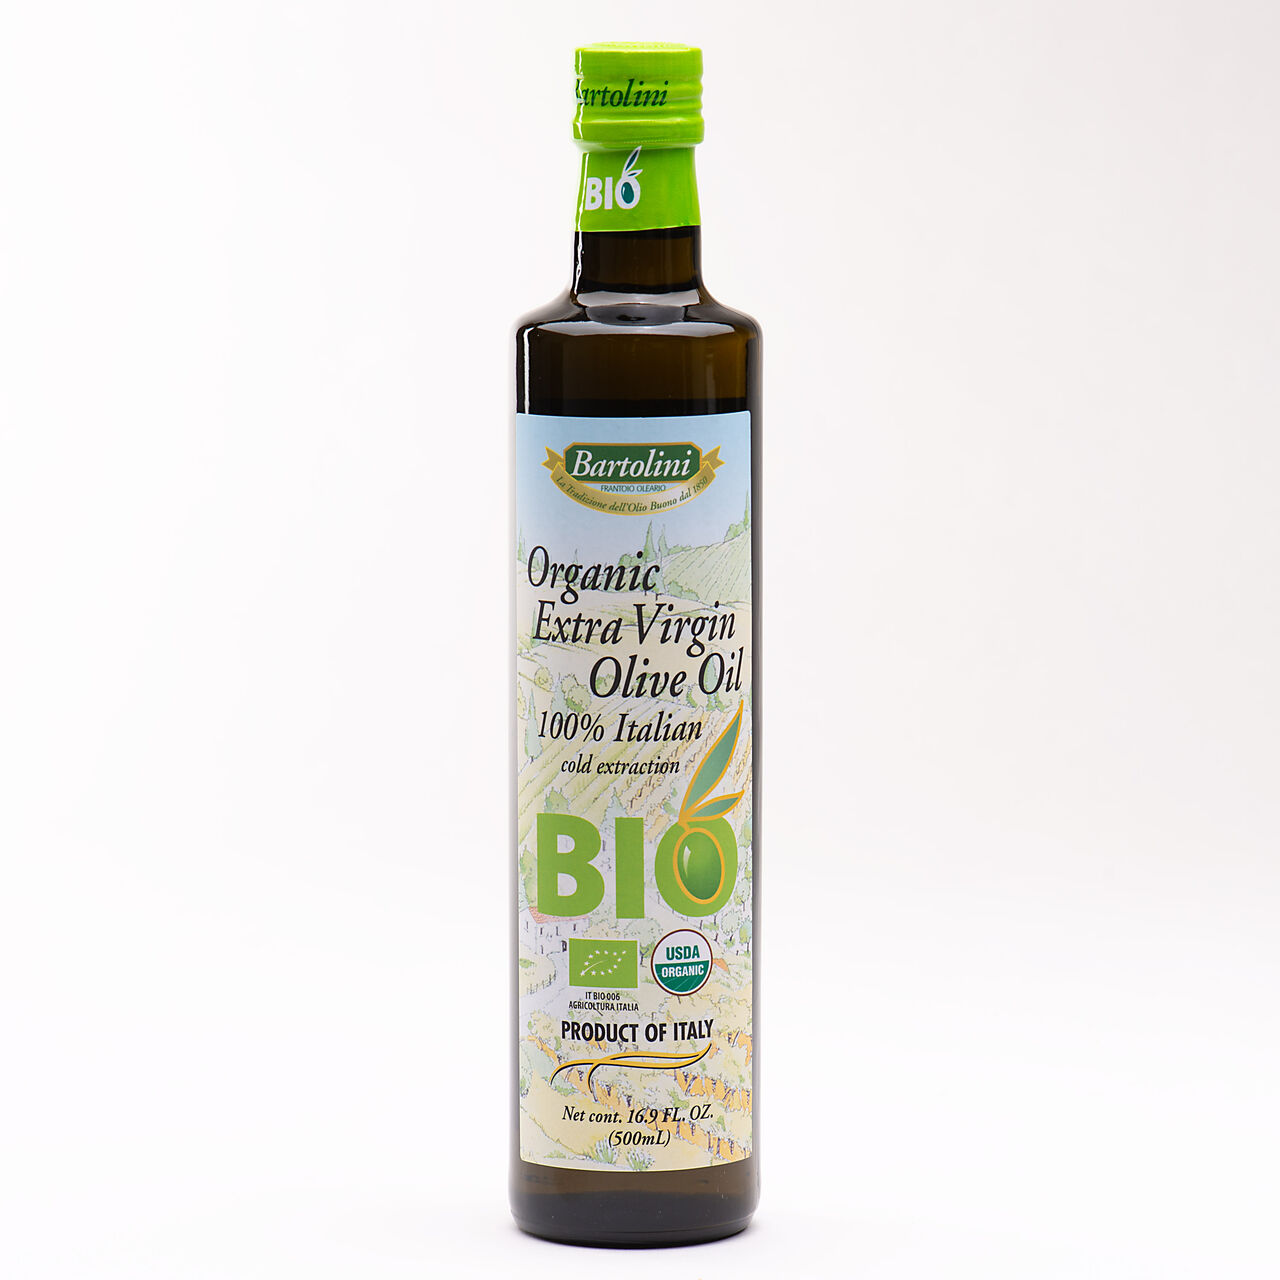 Bartolini Organic Extra Virgin Olive Oil - 16.9oz., , large image number 0